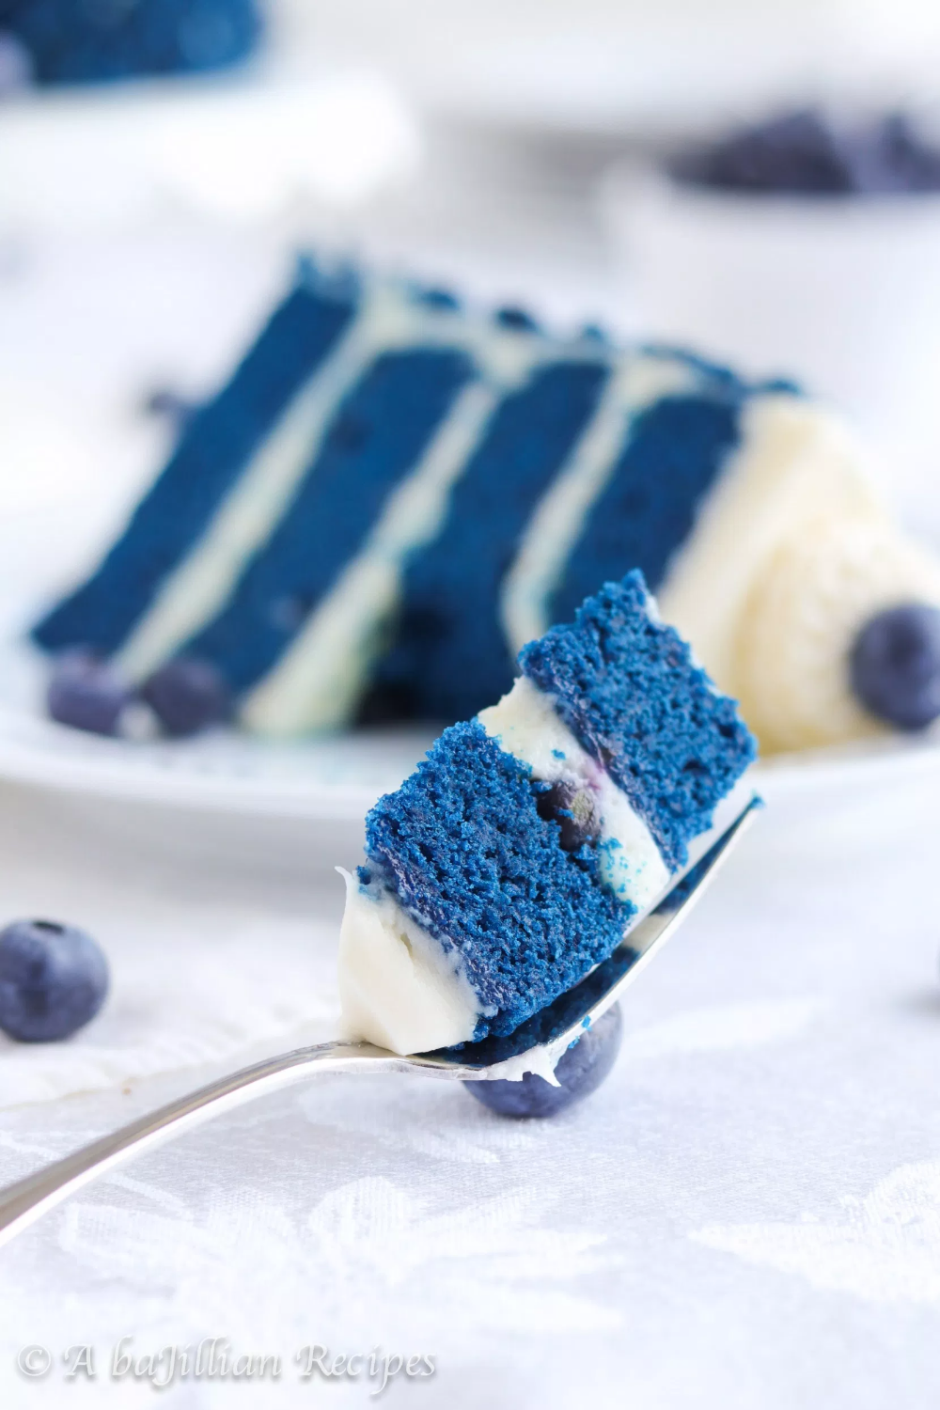 Голубой торт с голубикой